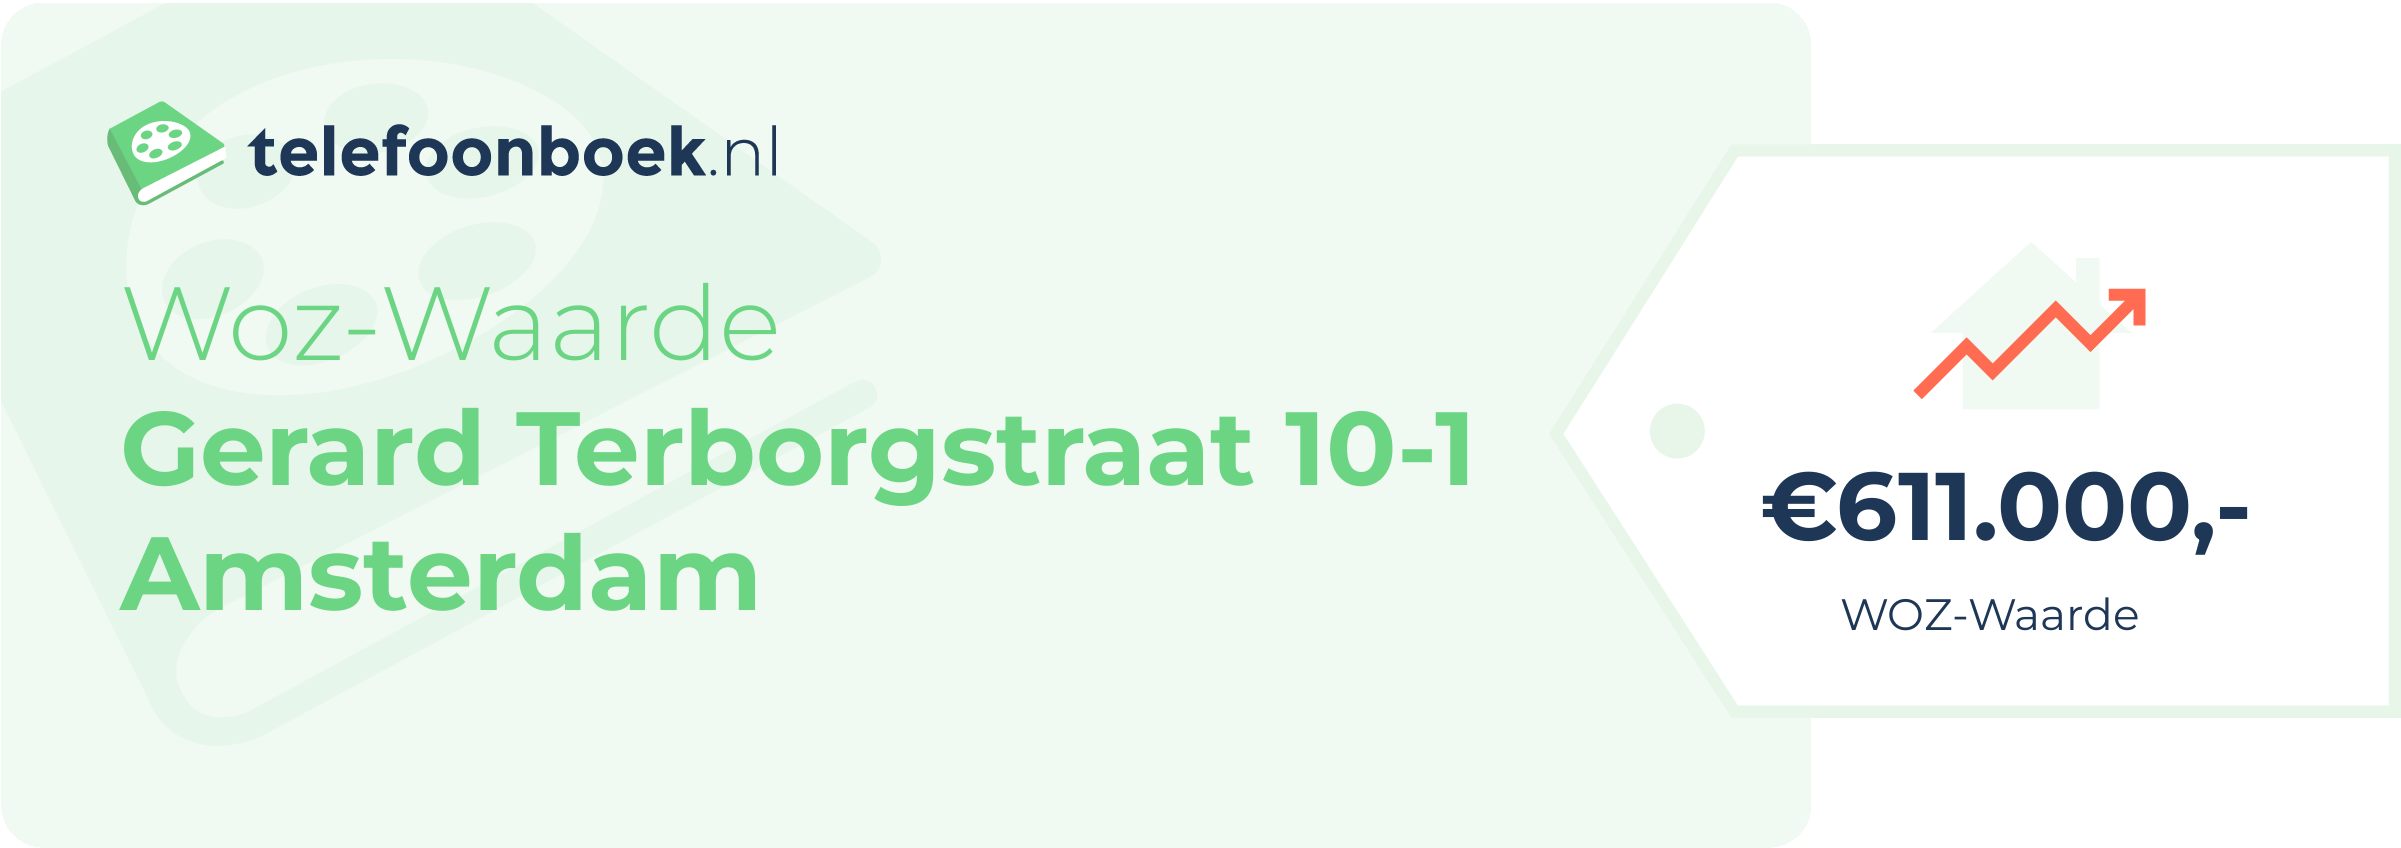 WOZ-waarde Gerard Terborgstraat 10-1 Amsterdam